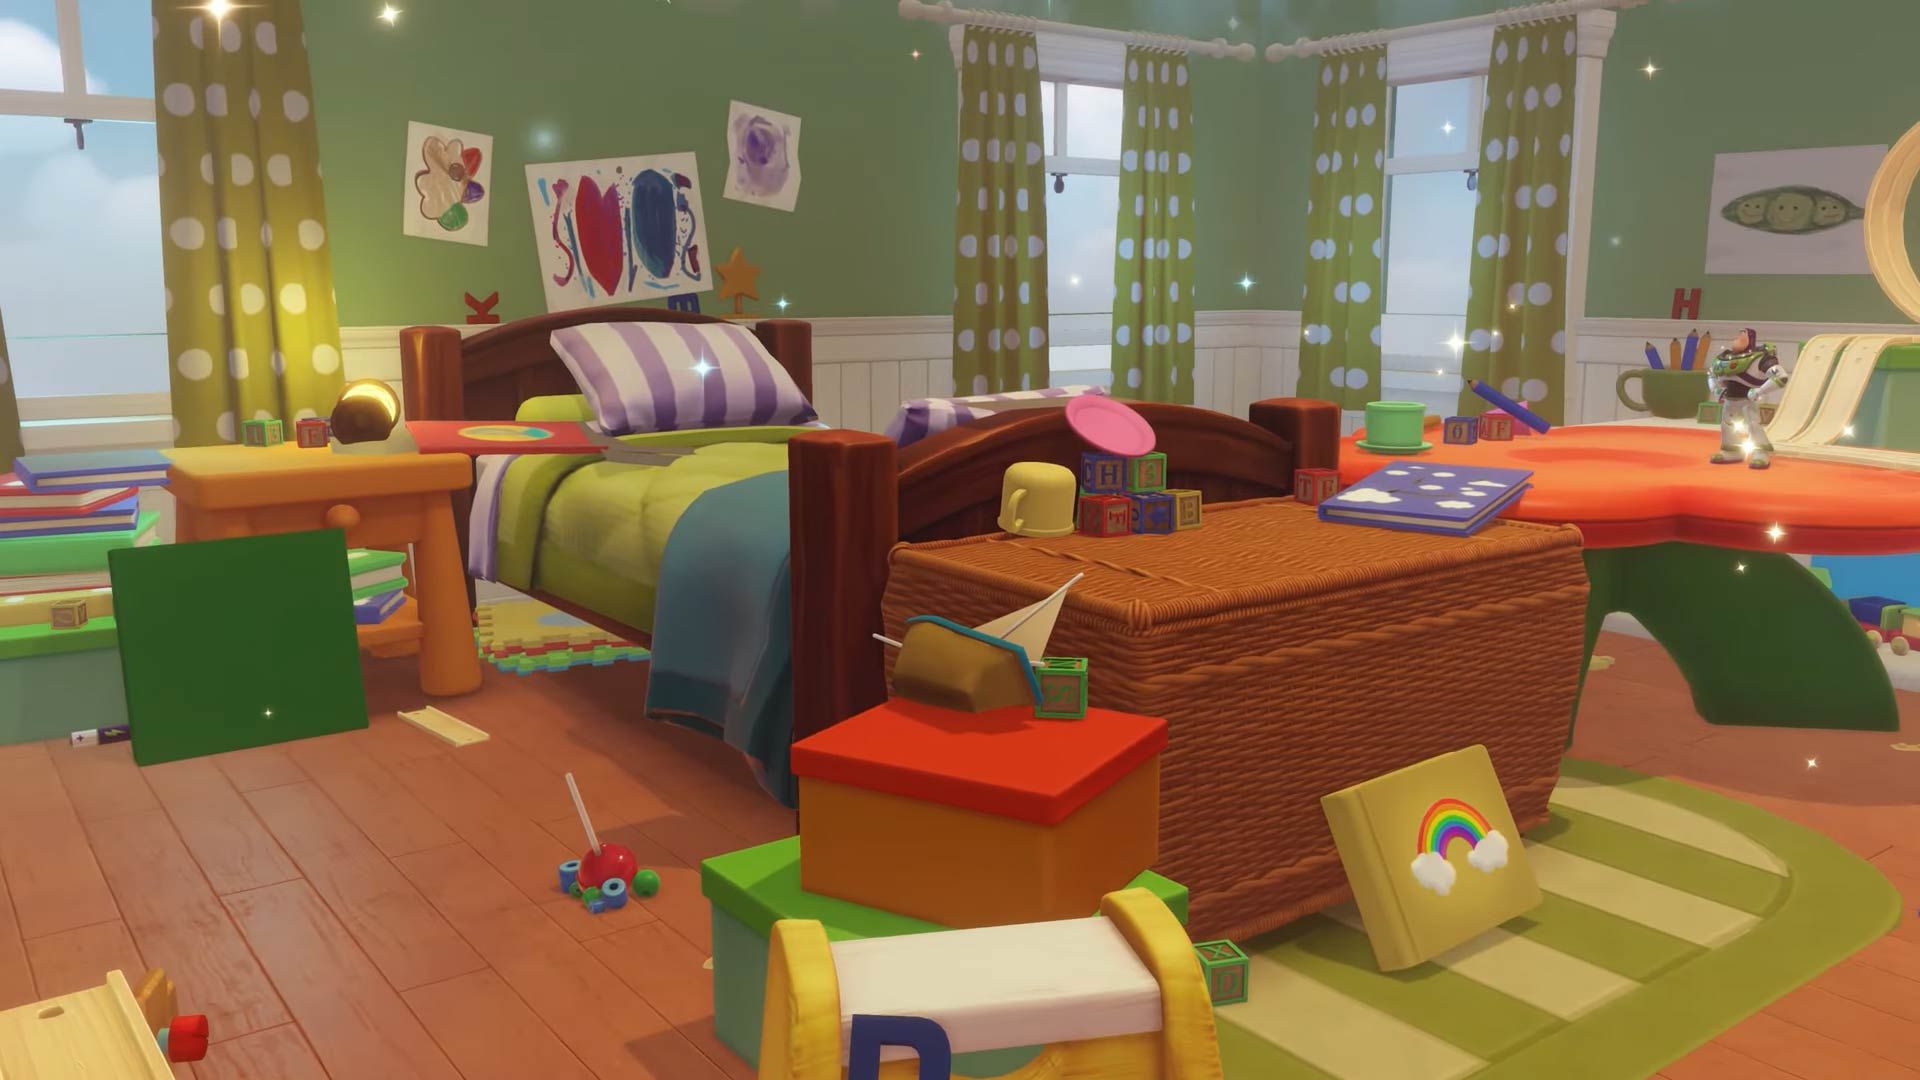 Une capture d'écran de la chambre de Bonnie, alias Toy Story Realm, dans Disney Dreamlight Valley